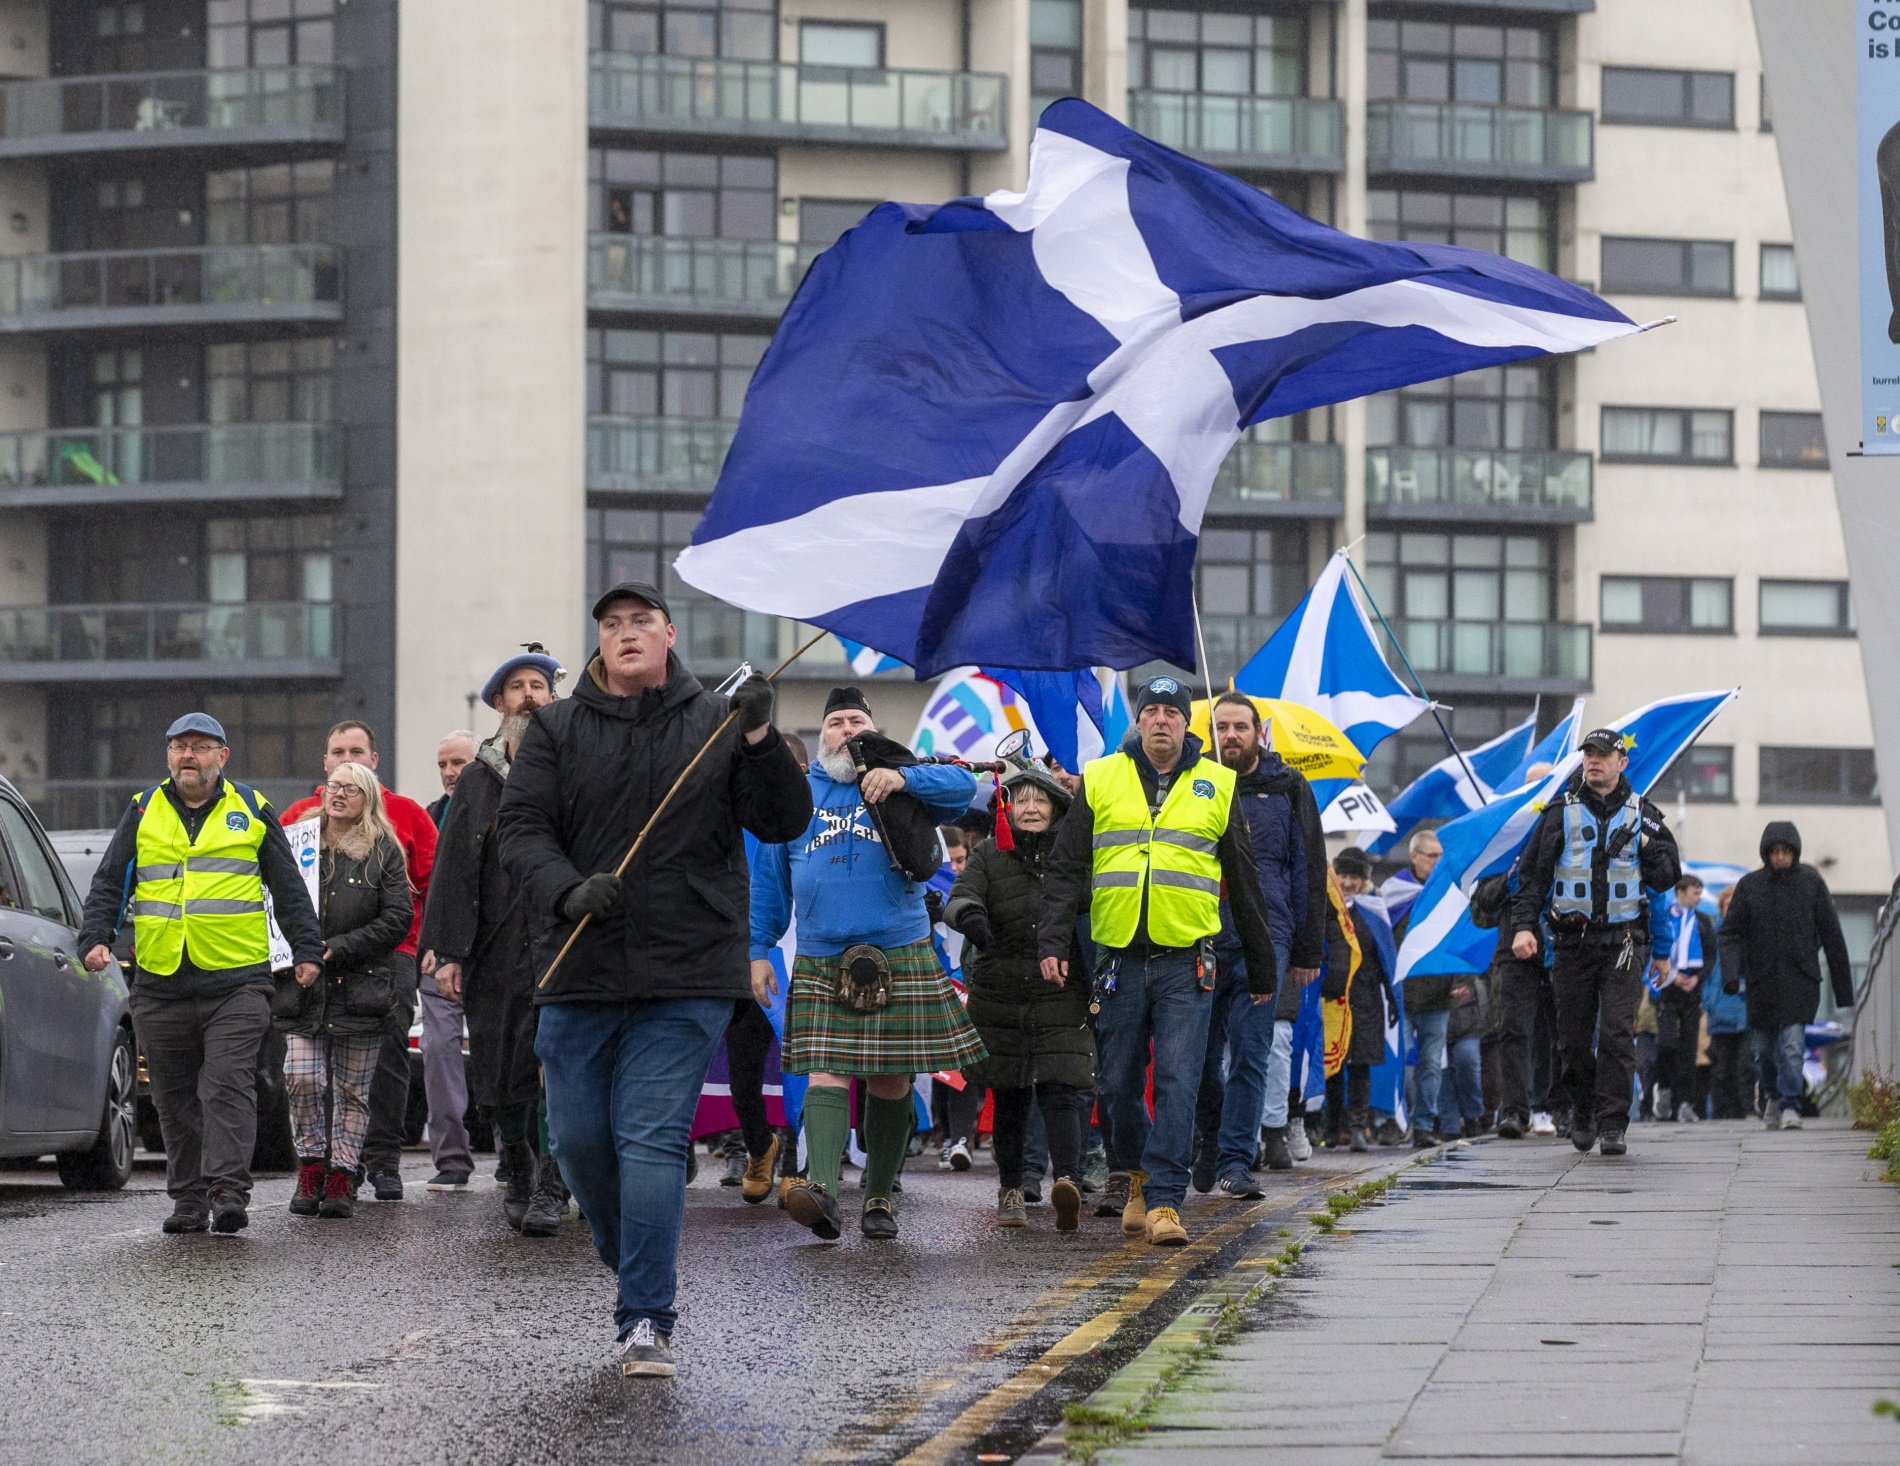 Mobilitzacions independentistes a Escòcia a favor de mantenir el procés